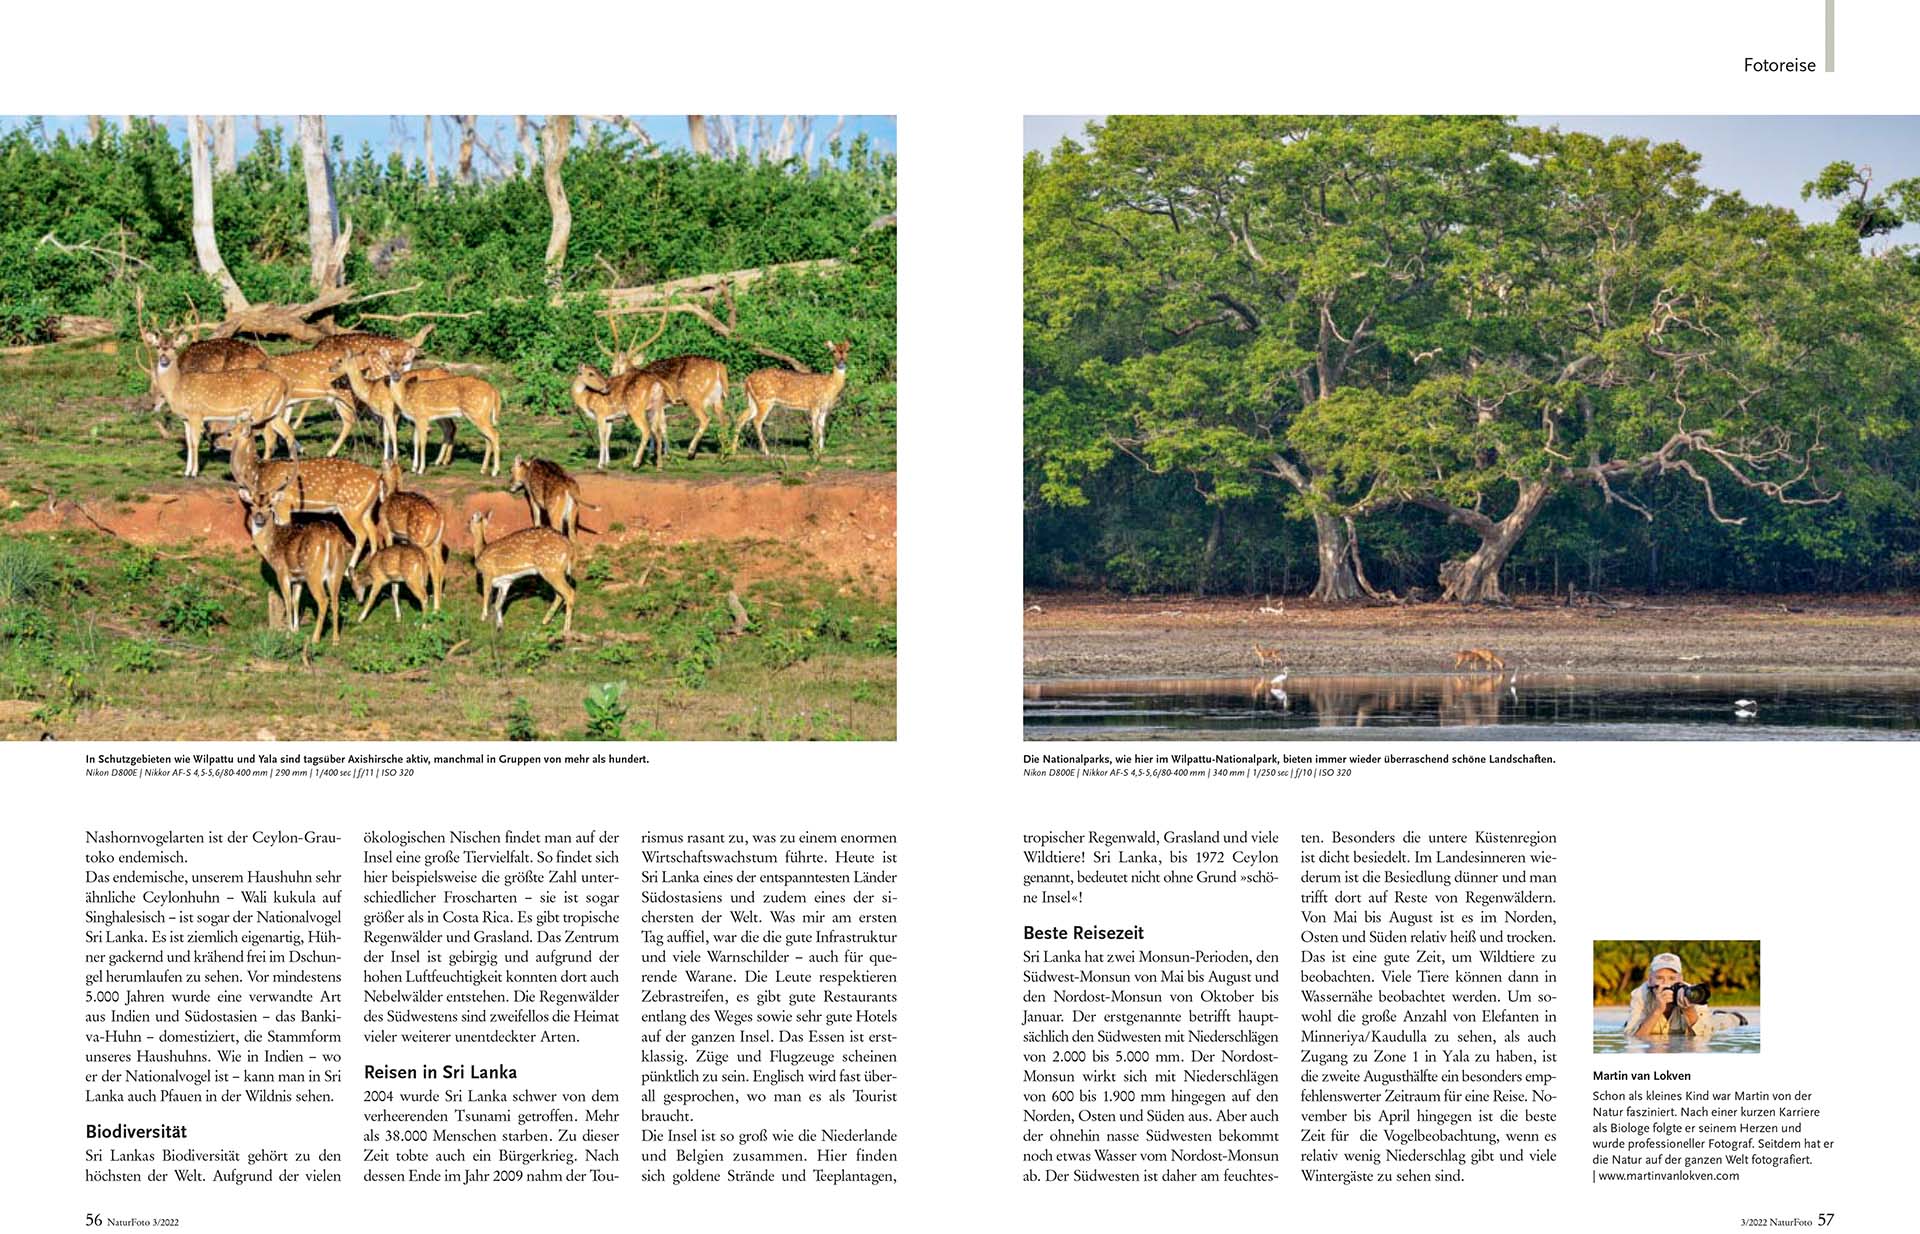 Acht pagina's artikel over de wildlife van Sri Lanka in het Duitse tijdschrift NaturFoto.